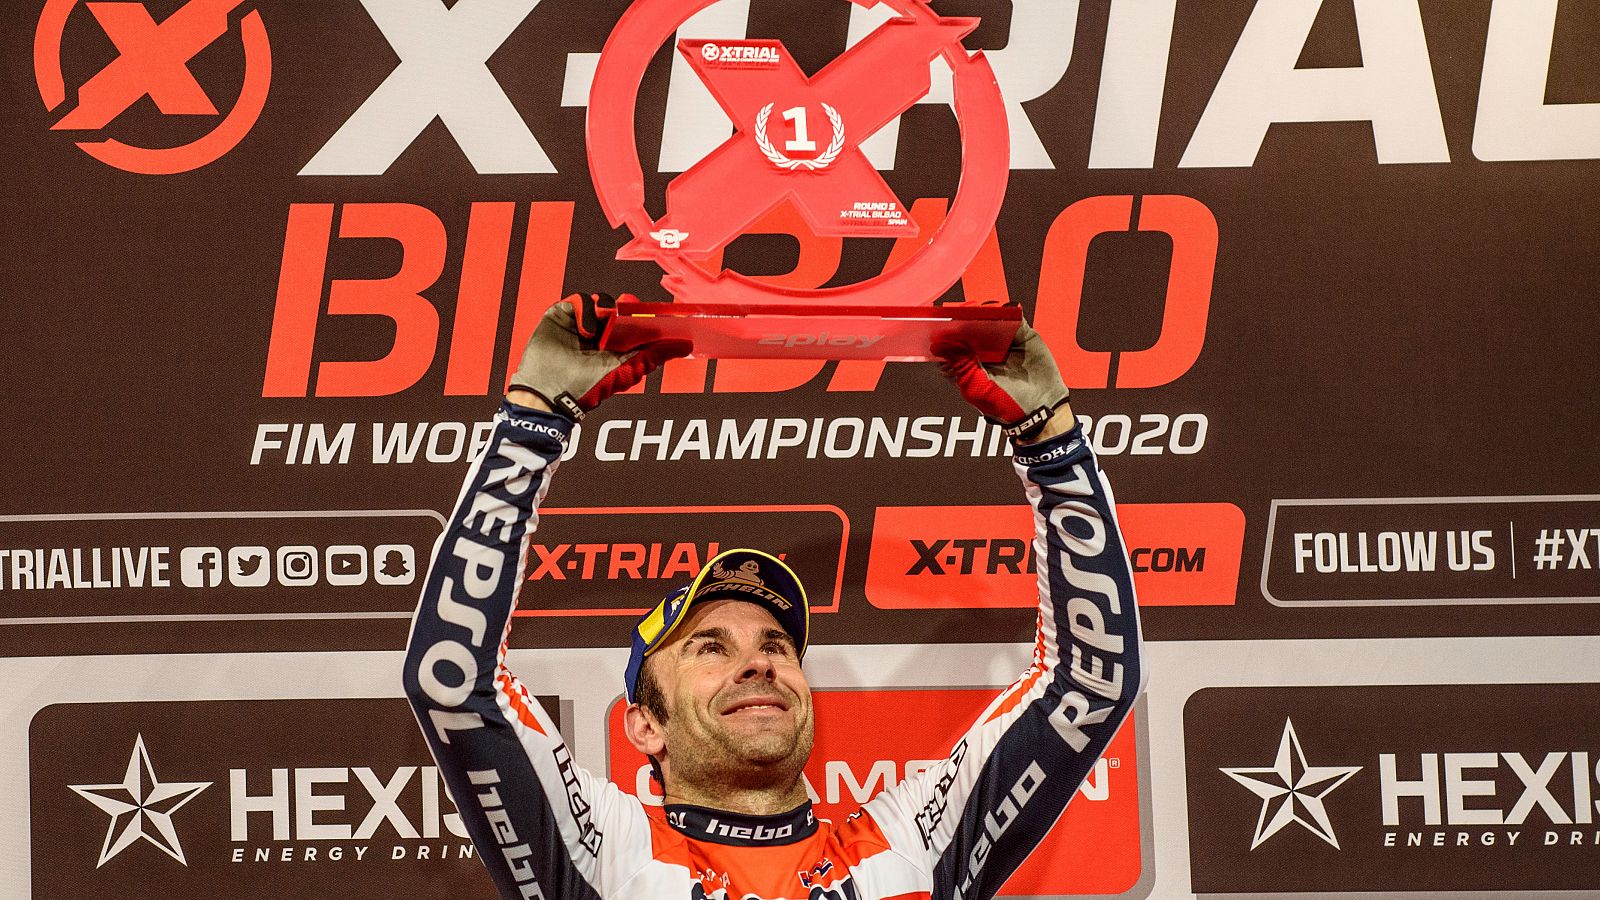 El piloto Toni Bou celbra su triunfo en la quinta prueba del Campeonato del Mundo de X-Trial 2020 en  Bilbao.